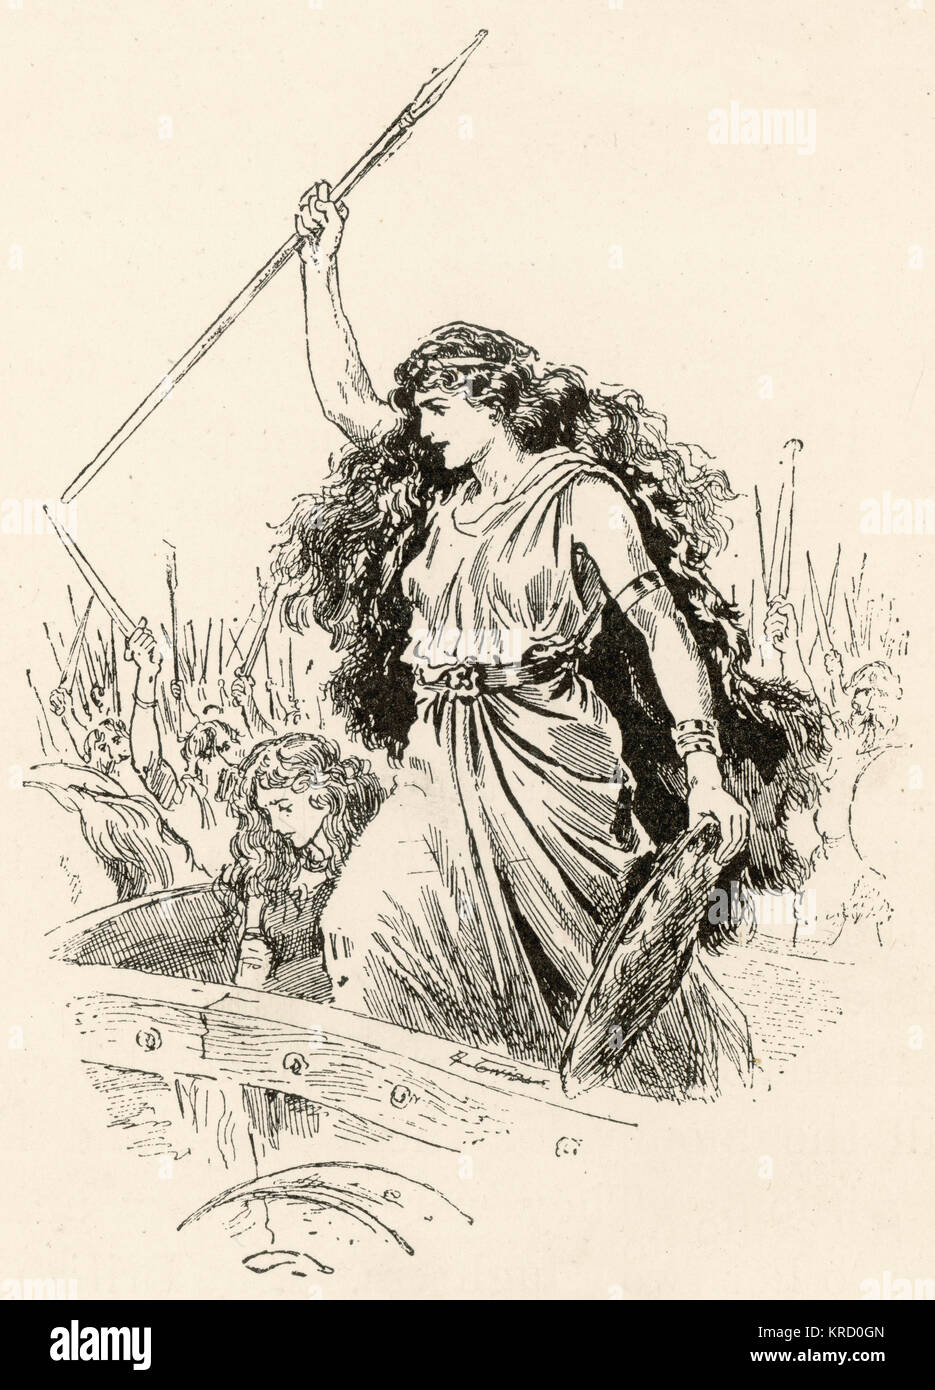 Königin Boudica der Iceni Stamm. Eine kombinierte Armee der Britischen Stämme, die sich Rose und sacked Camulodunum (Colchester), London (Londinium) und St Albans (verulamium), bevor sie schließlich von Sueton' Truppen in der Schlacht von Watling Street besiegt werden geboten. Datum: ca. 60 AD Stockfoto